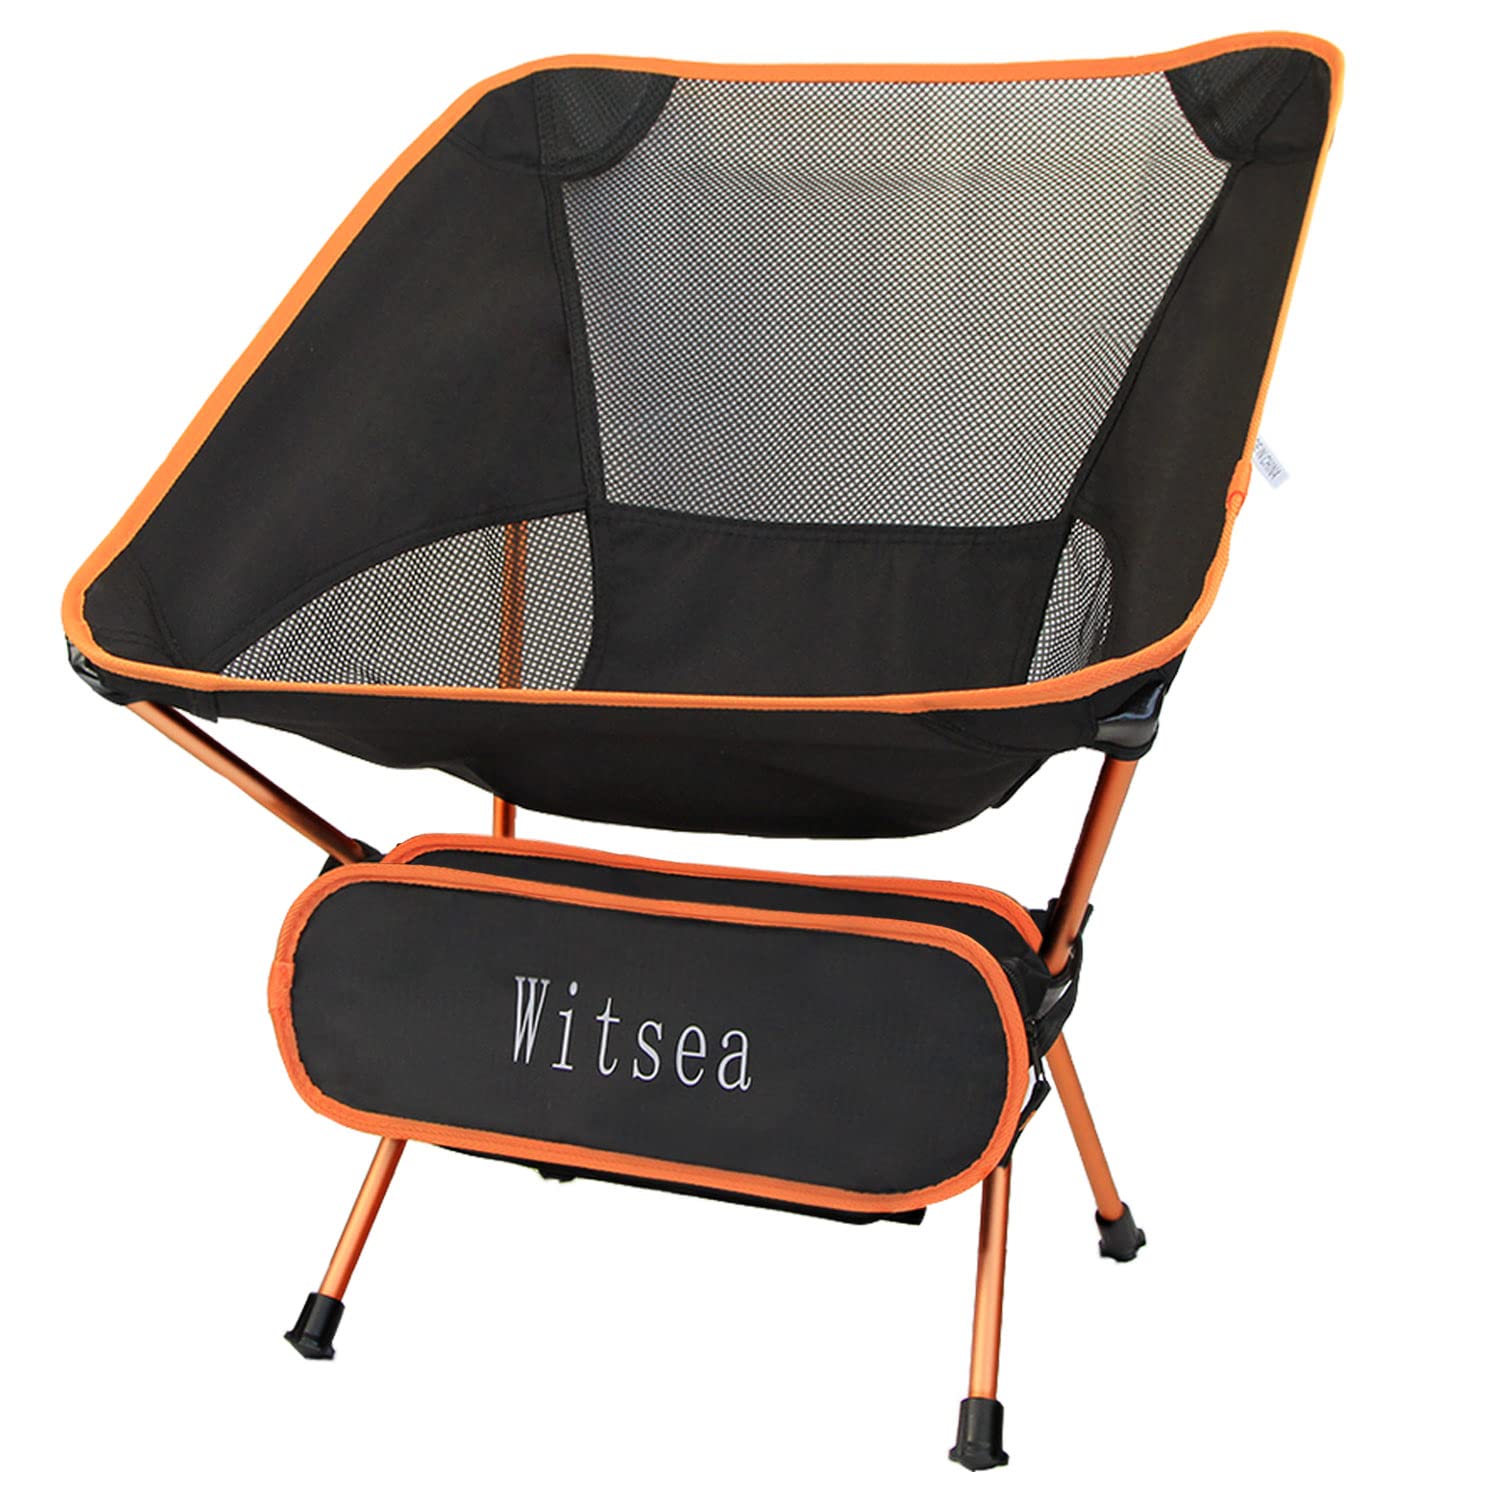 送料無料Witsea Outdoor Ultralight Portable Folding Chairs for Outdoor Camping Travel Beach Picnic Festival Hiking並行